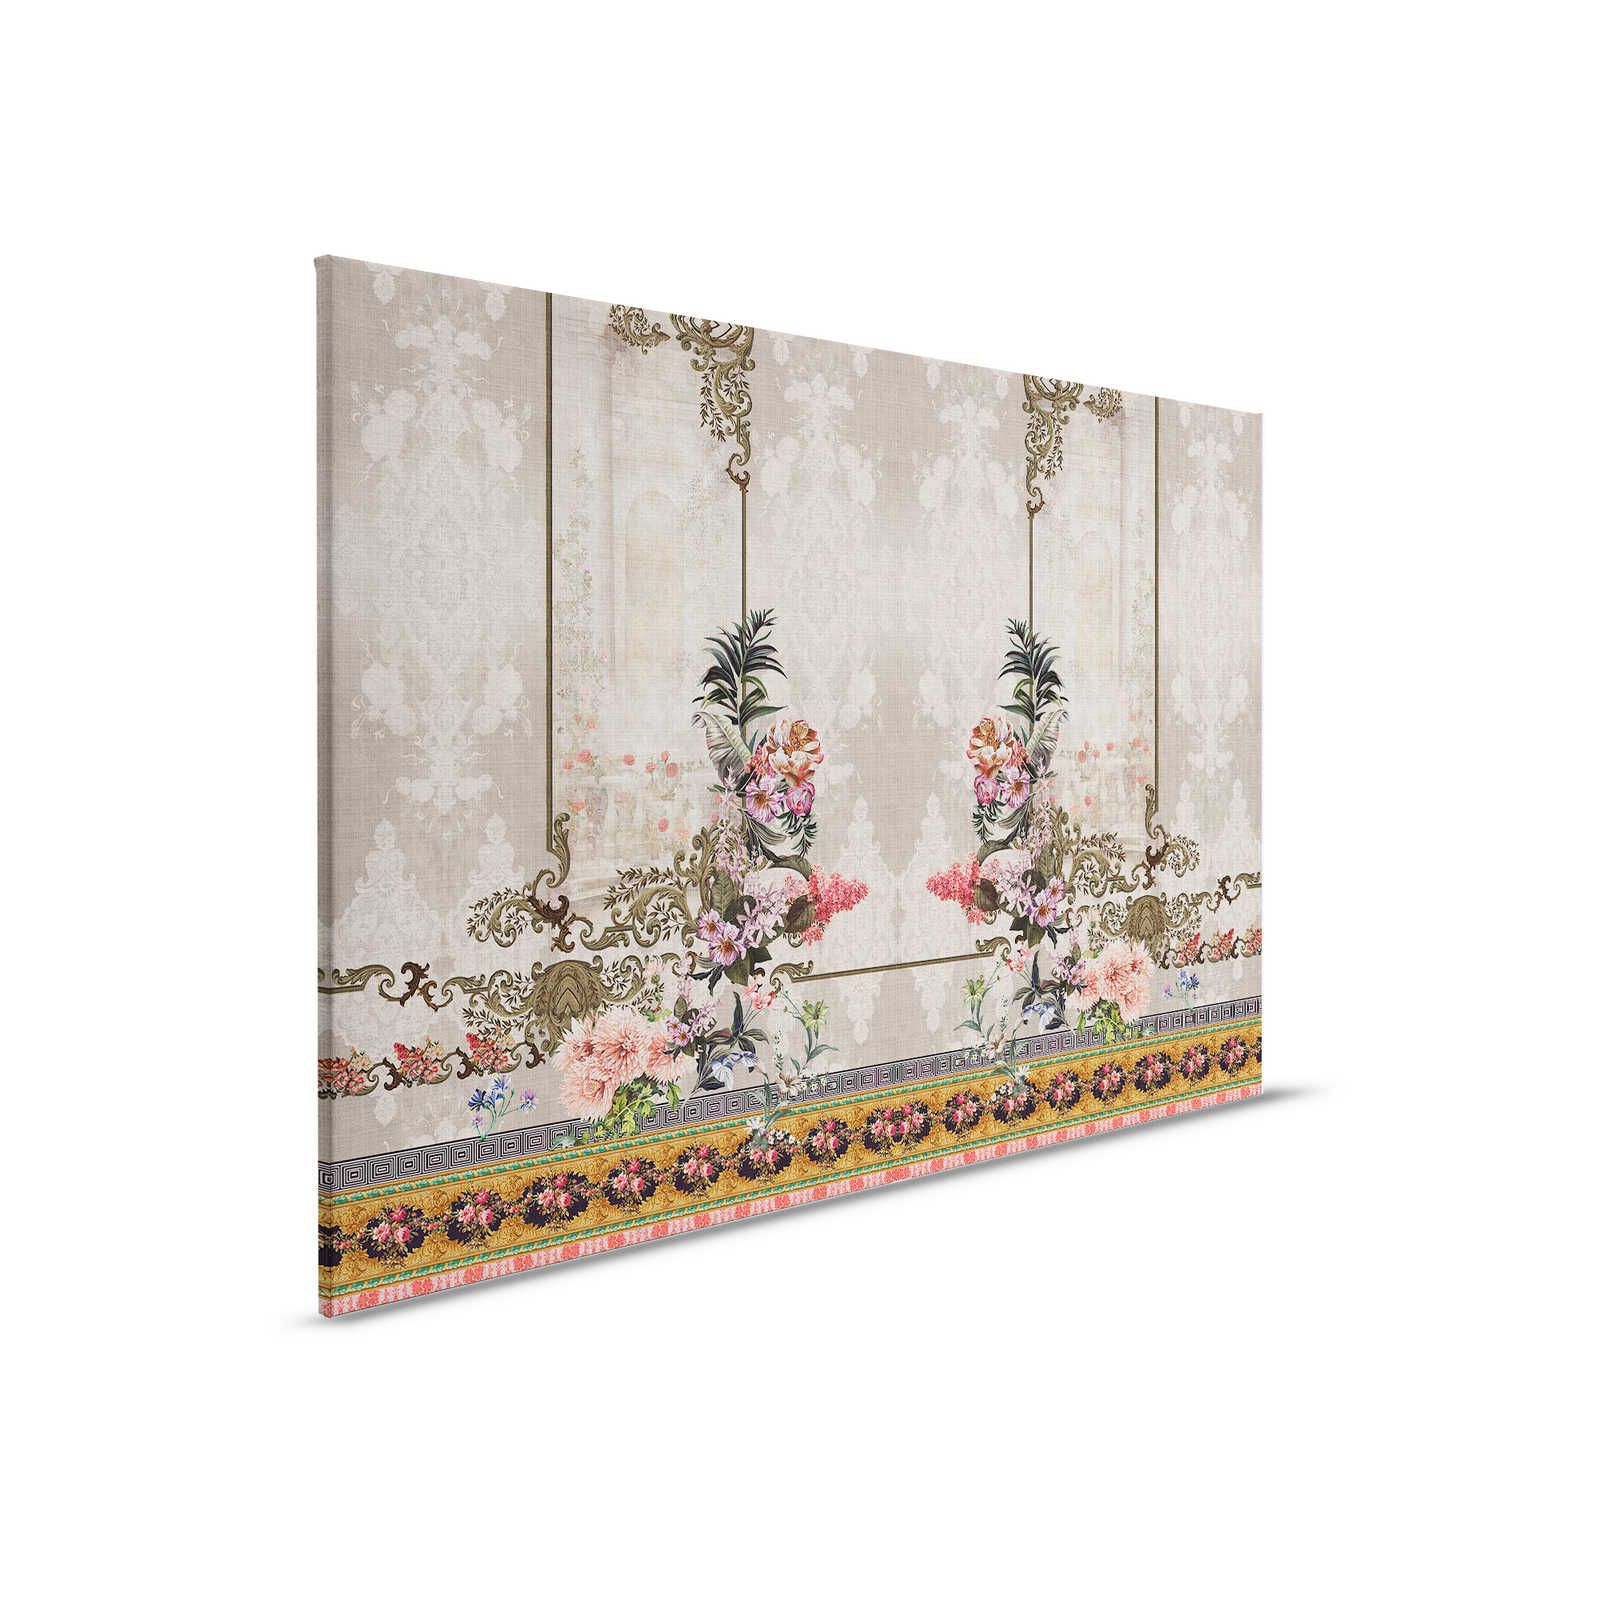 Oriental Garden 1 - Quadro su tela Decorazione murale Fiori e bordi - 0,90 m x 0,60 m
